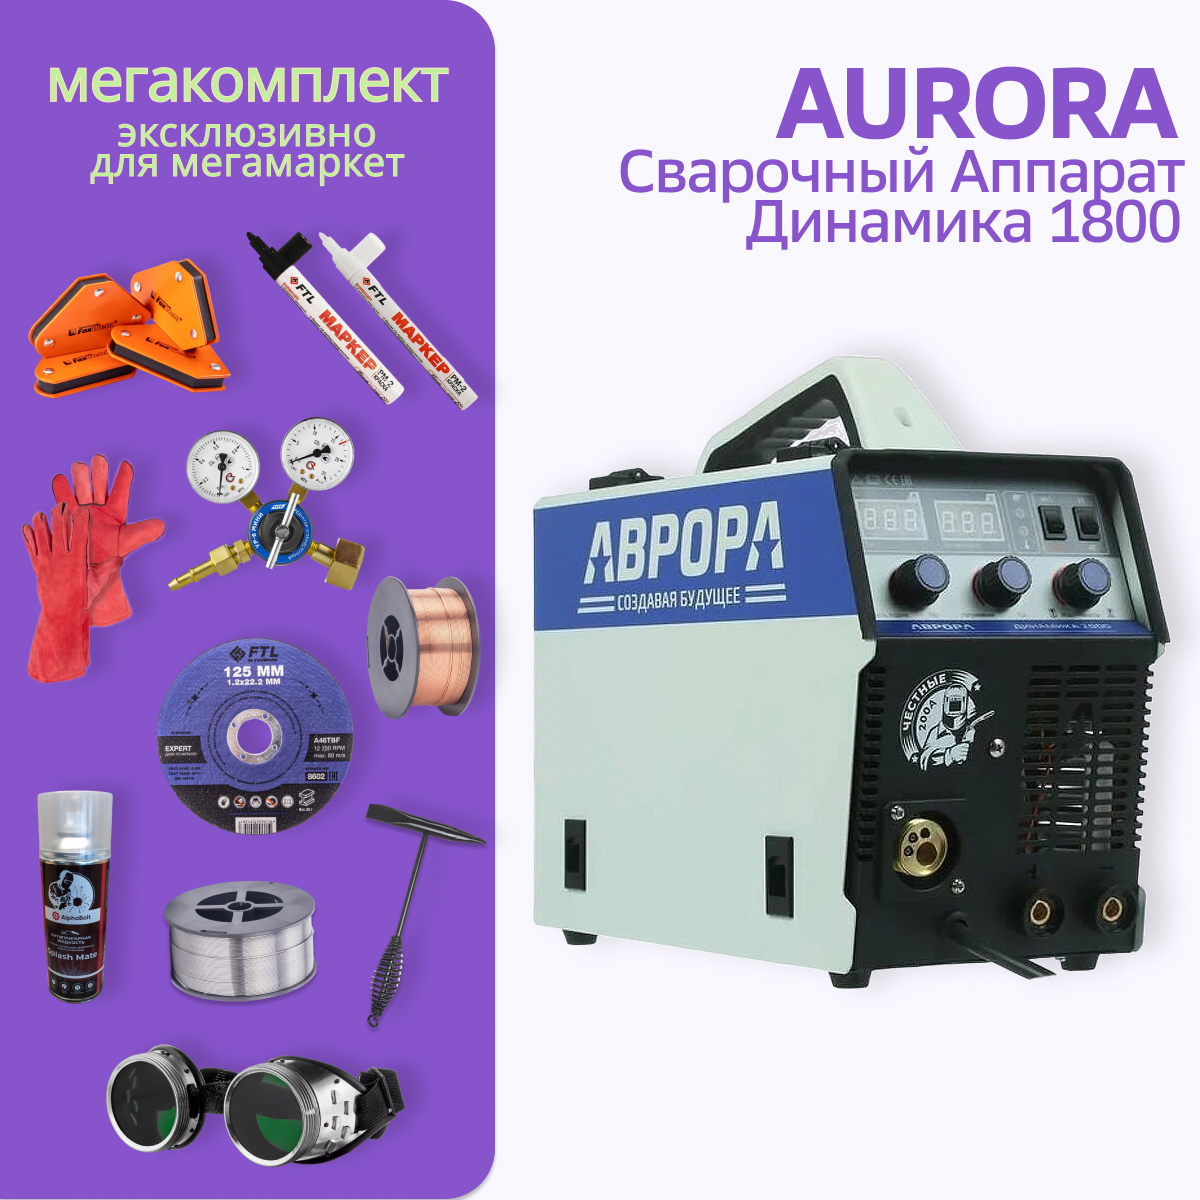 Сварочный полуавтомат АВРОРА Динамика 1800 МЕГА комплект - купить в Comboland, цена на Мегамаркет